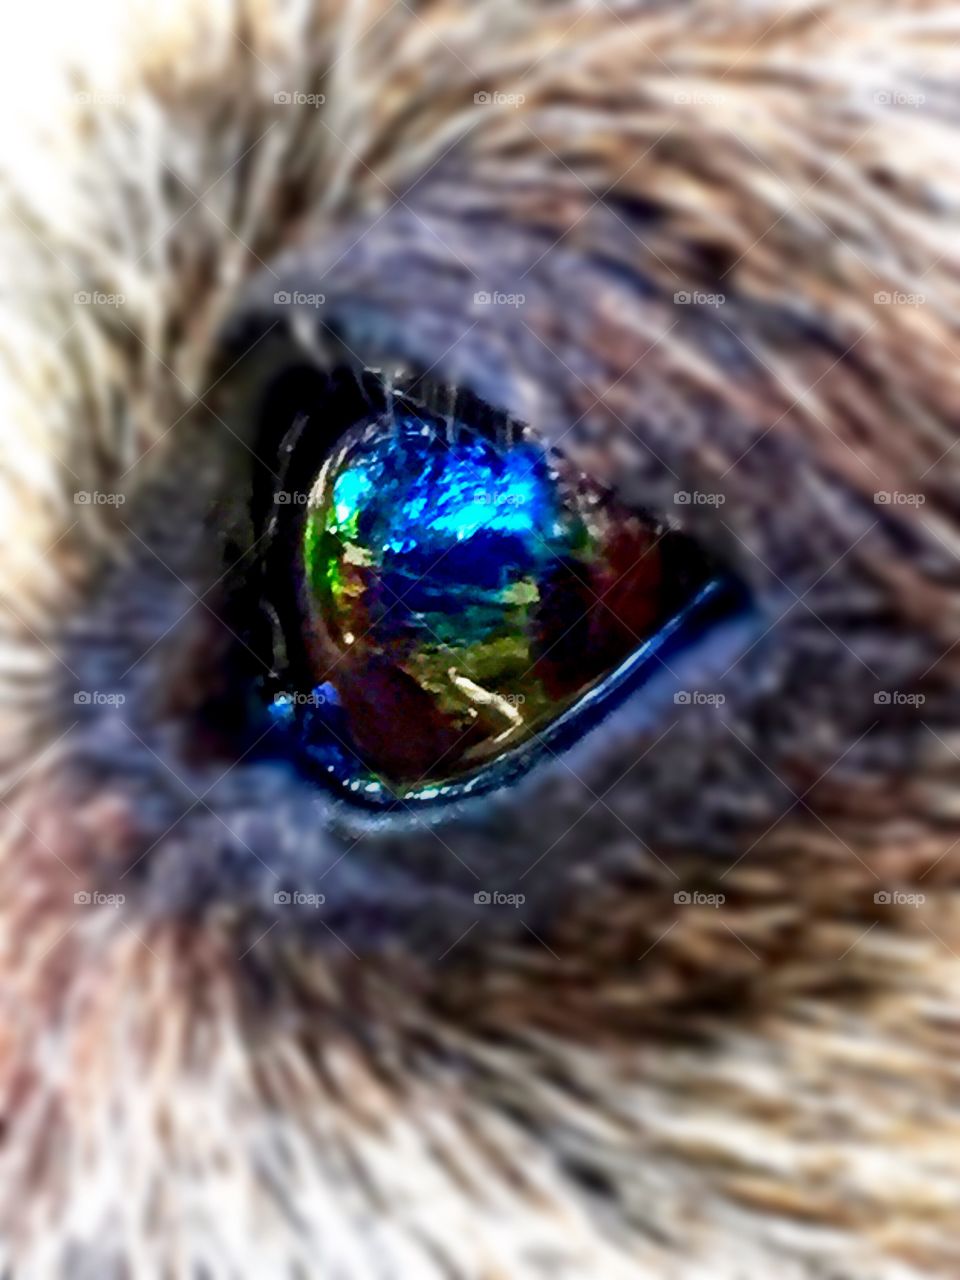 Dachshund eye